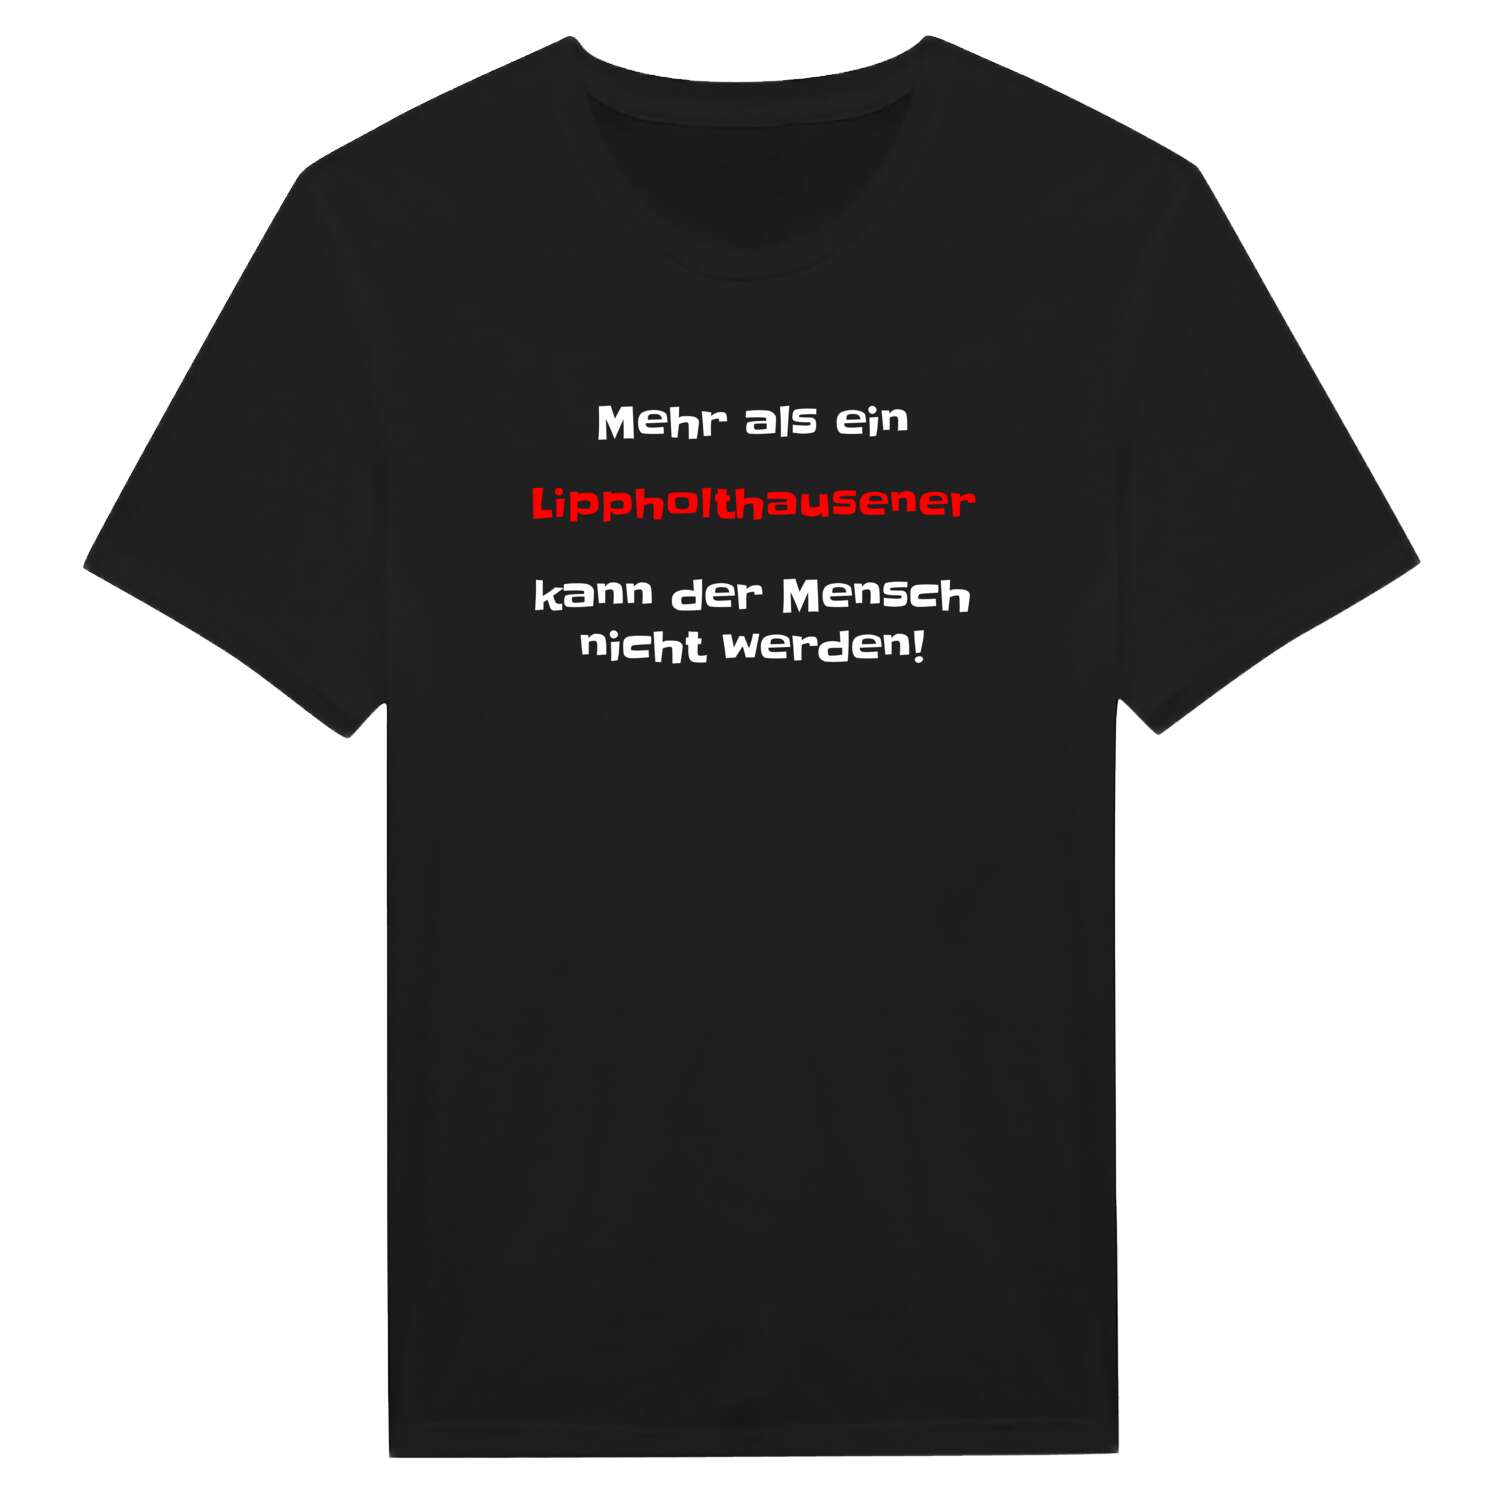 Lippholthausen T-Shirt »Mehr als ein«